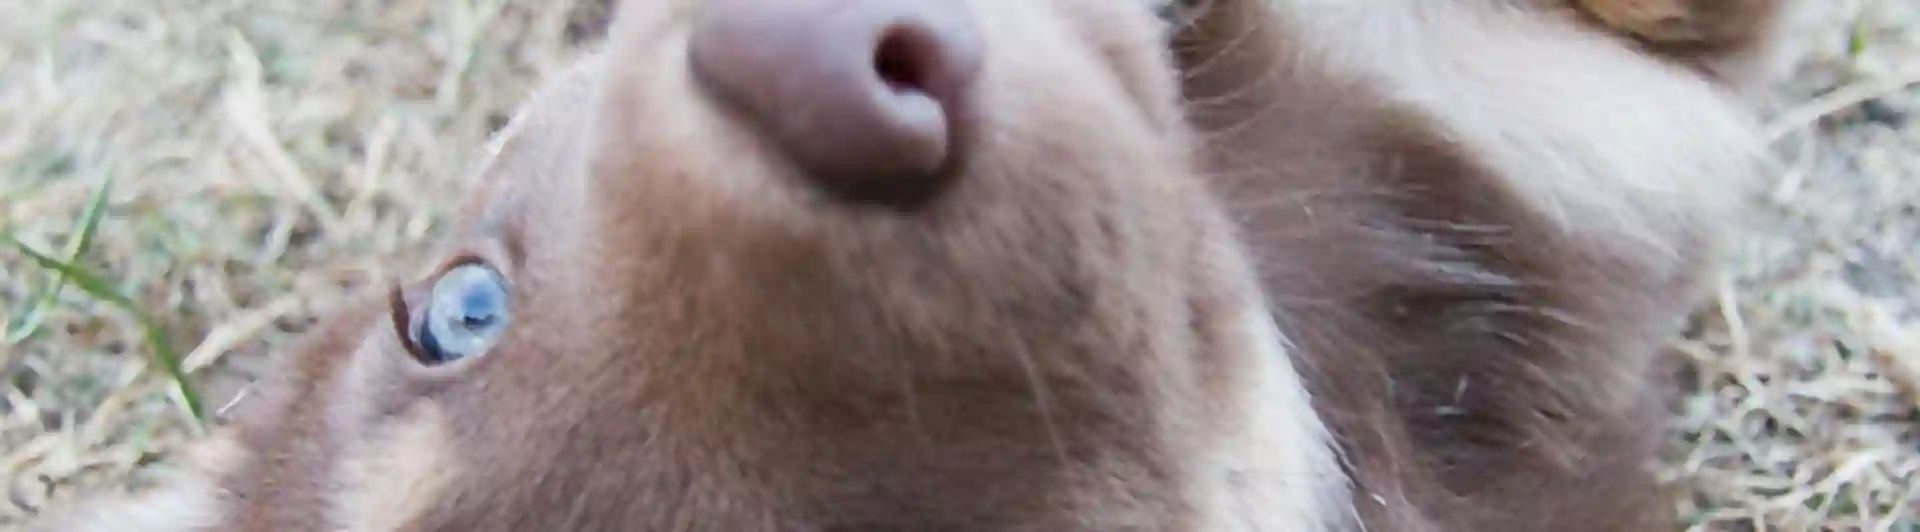 Närbild på en rödbrun hunds ansikte